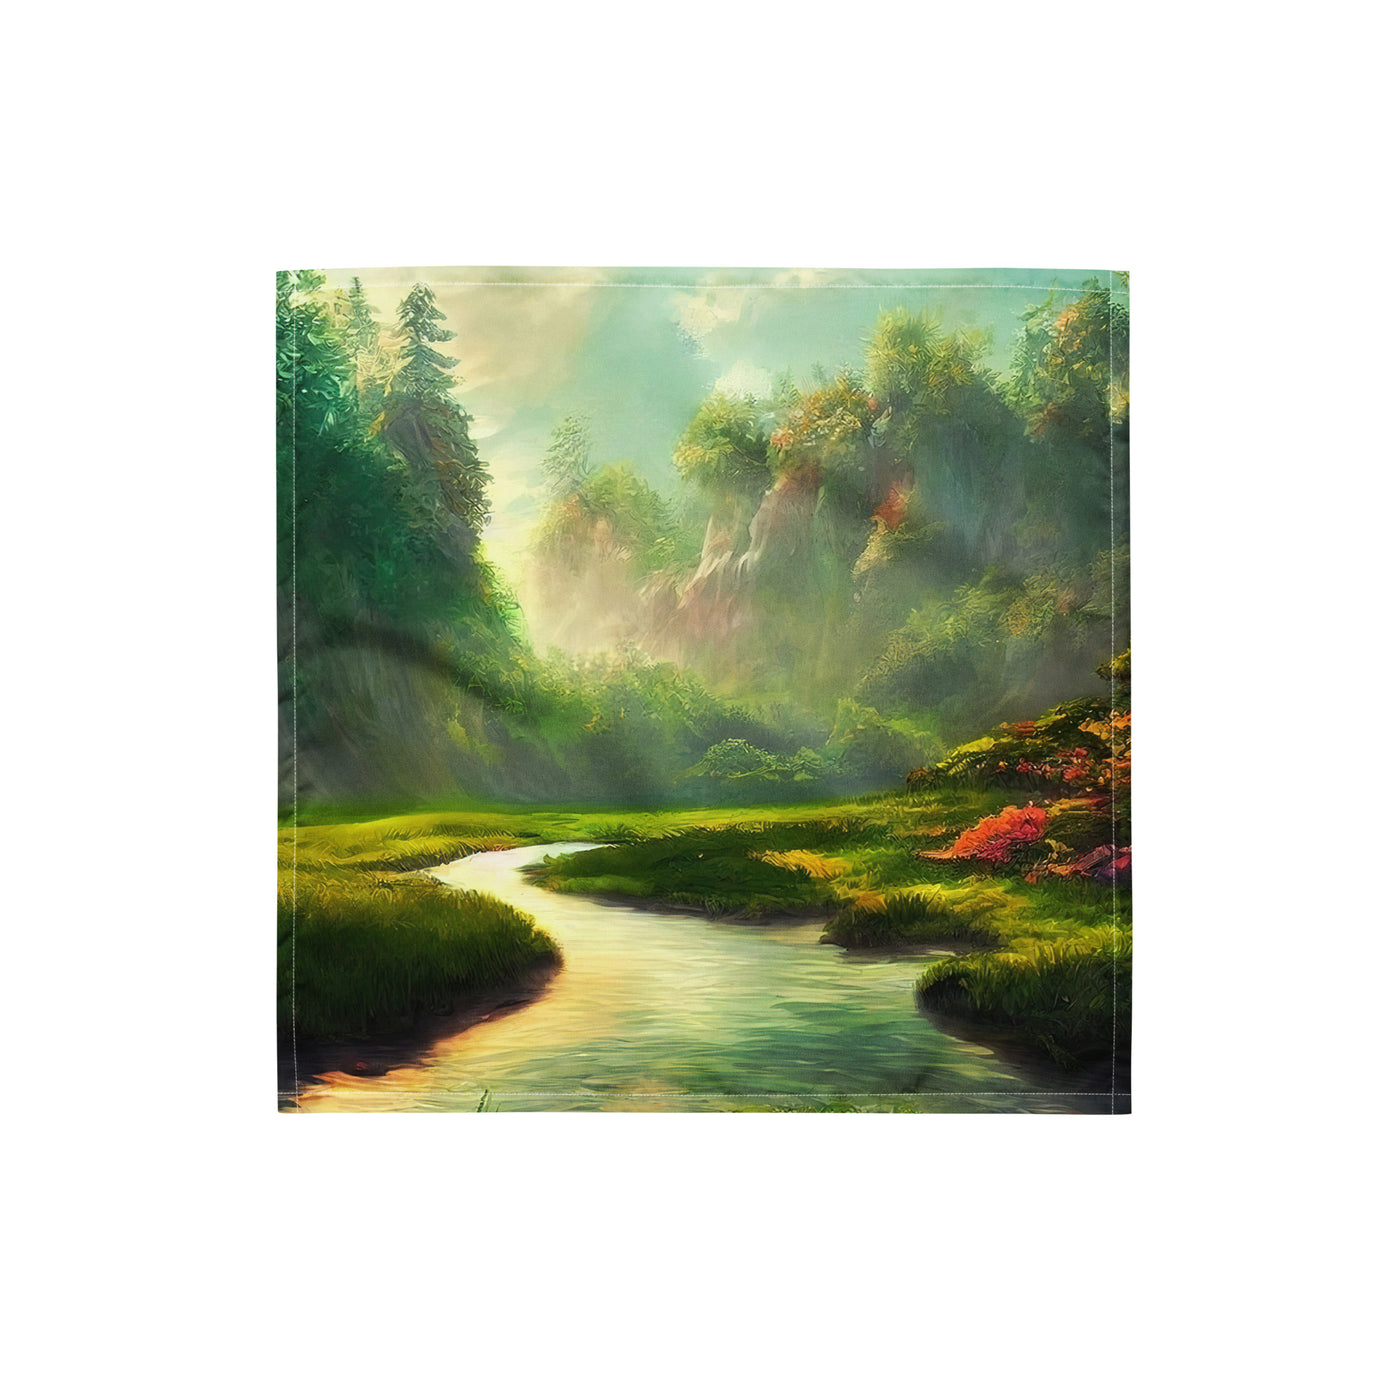 Bach im tropischen Wald - Landschaftsmalerei - Bandana (All-Over Print) camping xxx S